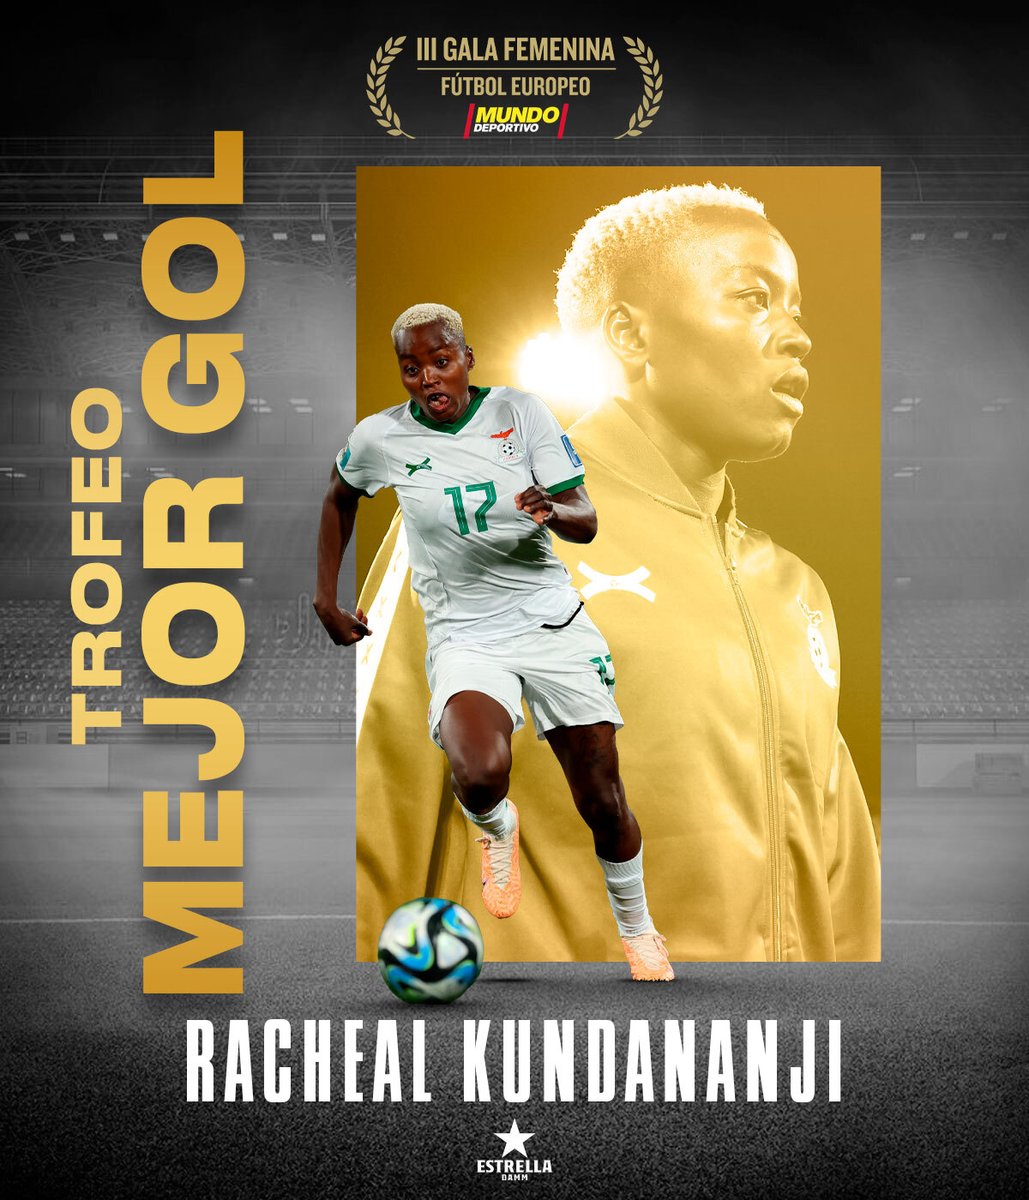 🏅 Racheal Kundananji (@KKundananji) recibe el Trofeo Mejor Gol Estrella Damm 🤝 Entrega @EstrellaDammEs #GalaFutFem